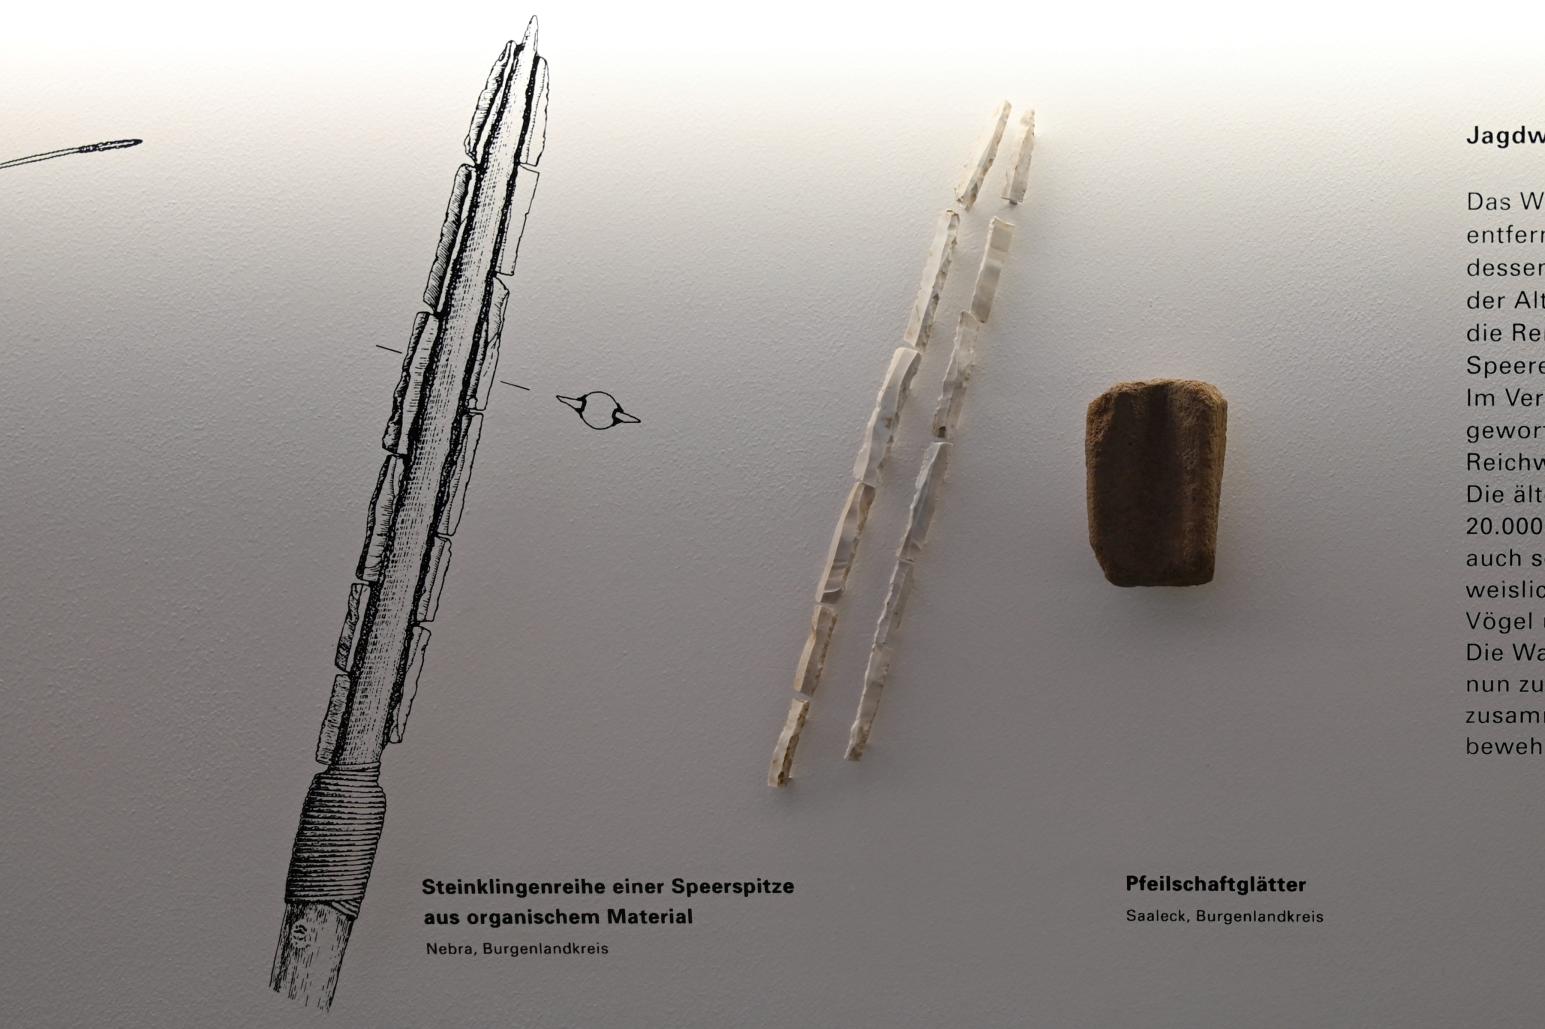 Steinklingenreihe einer Speerspitze, Magdalénien, 13000 - 10000 v. Chr.